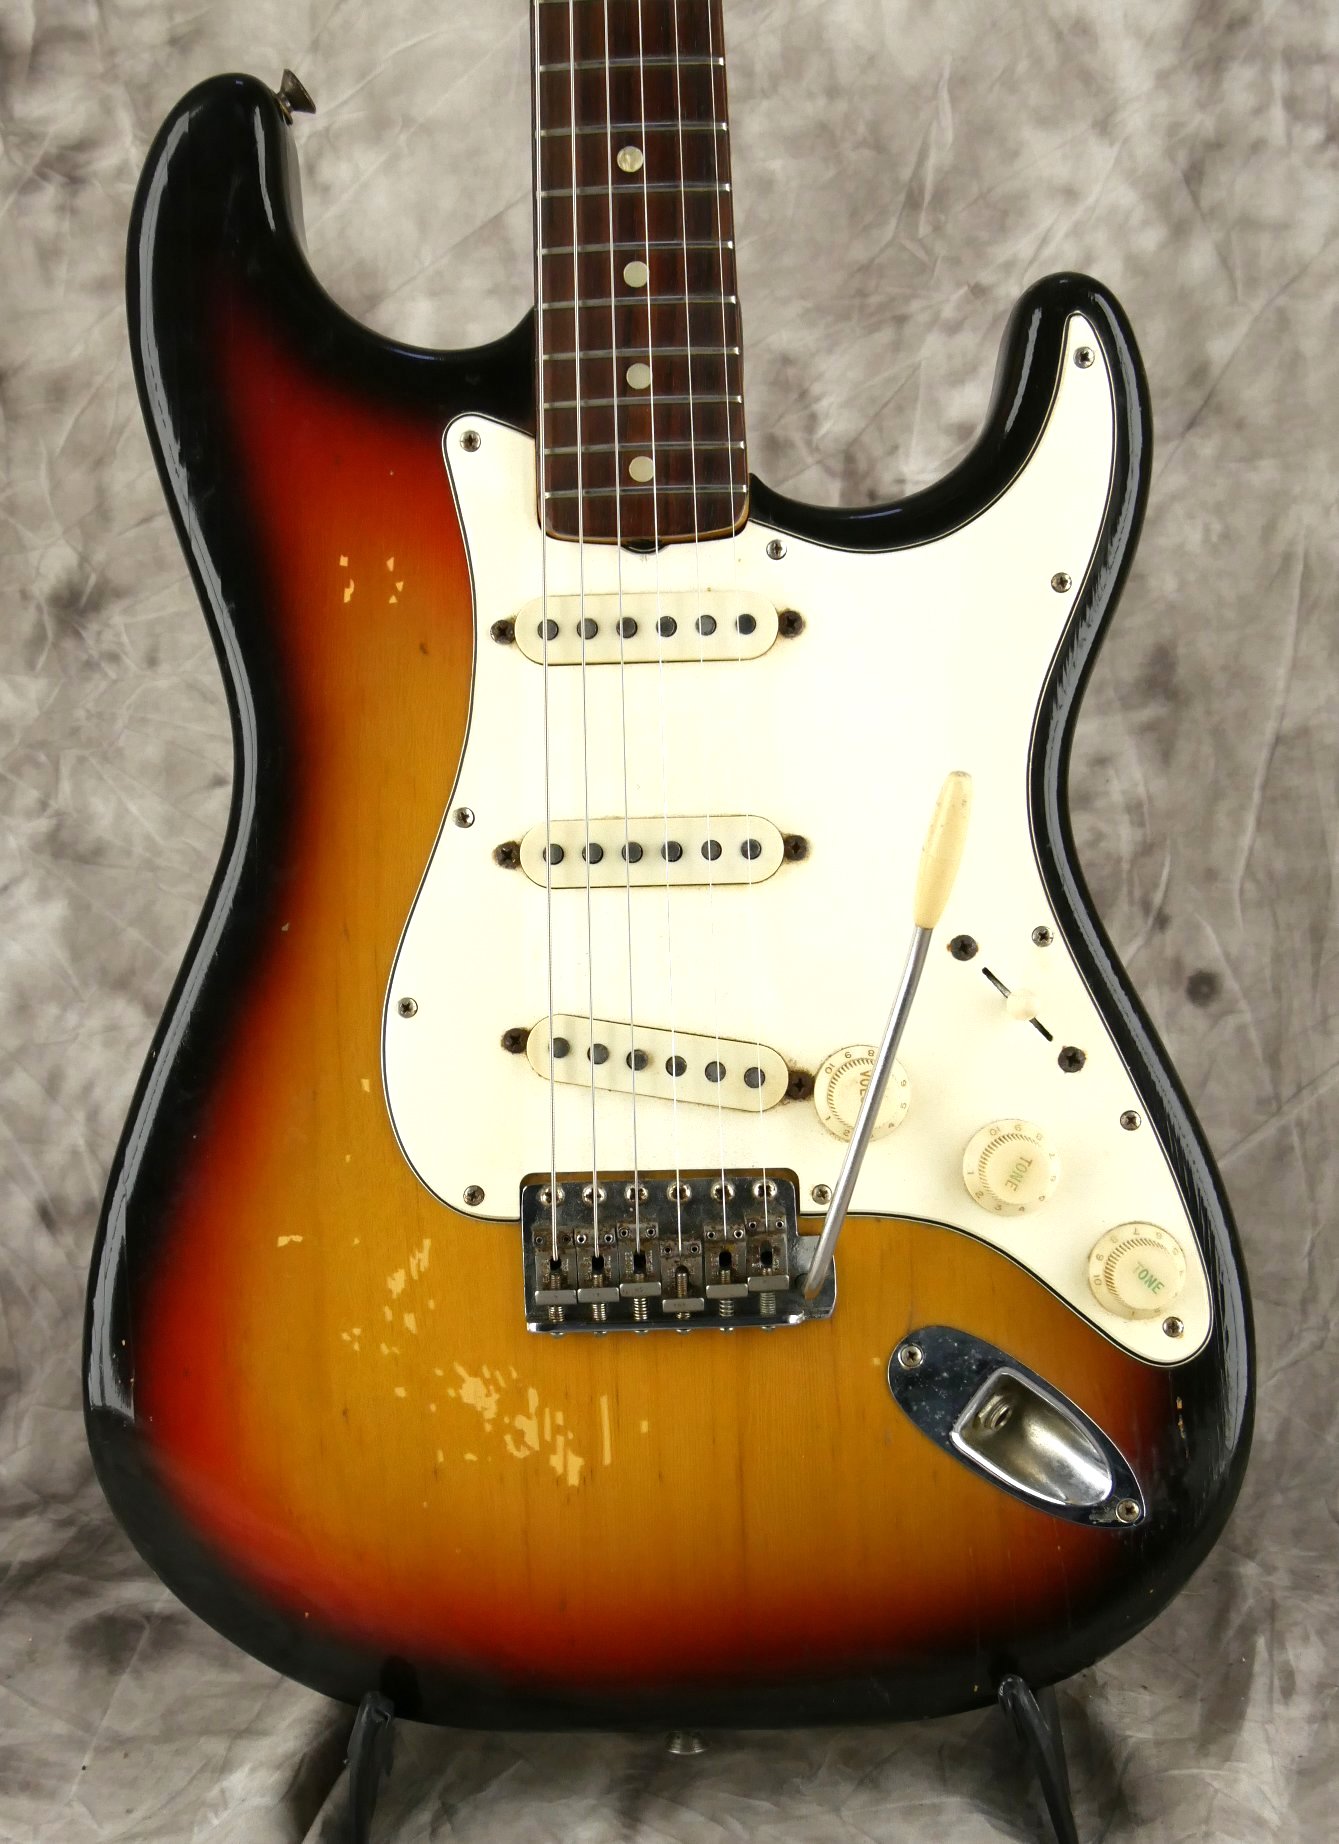 Fender_Stratocaster-1970_sunburst-tremolo-002.JPG